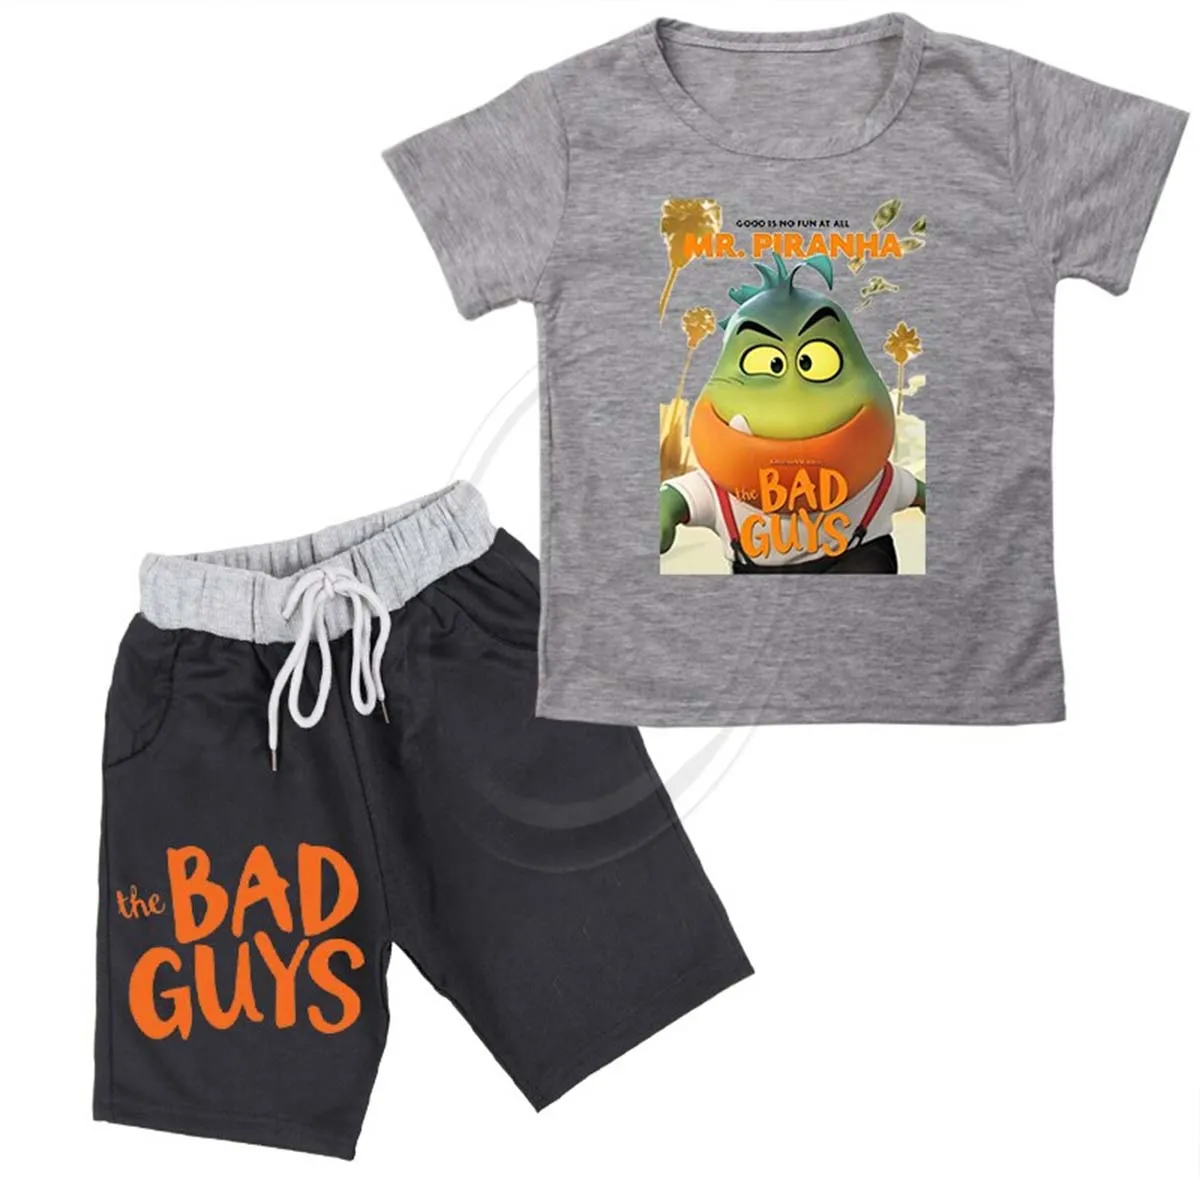 夏の男の子の服子供赤ちゃん漫画ショーツ女の子の衣装スポーツスーツ子供服4-14年セットバッドガイTシャツセット